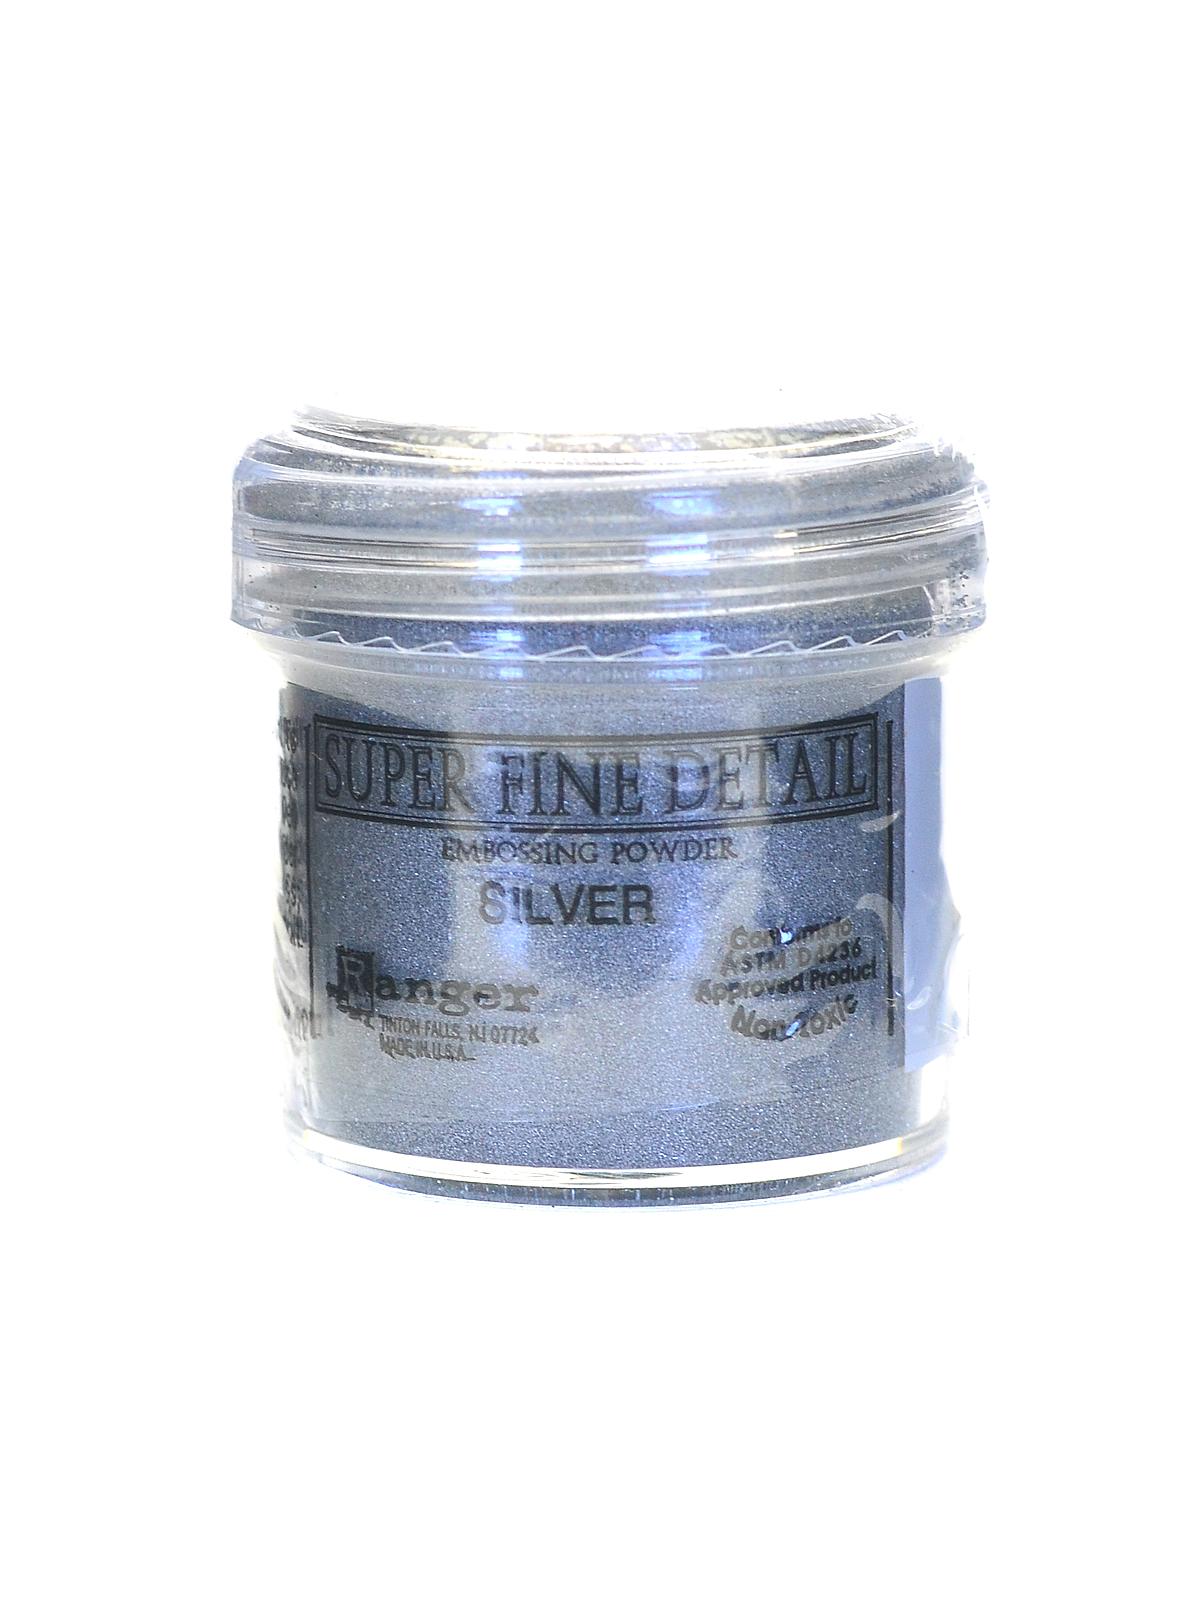 Embossing Powder Super Fine Silver 1 Oz. Jar